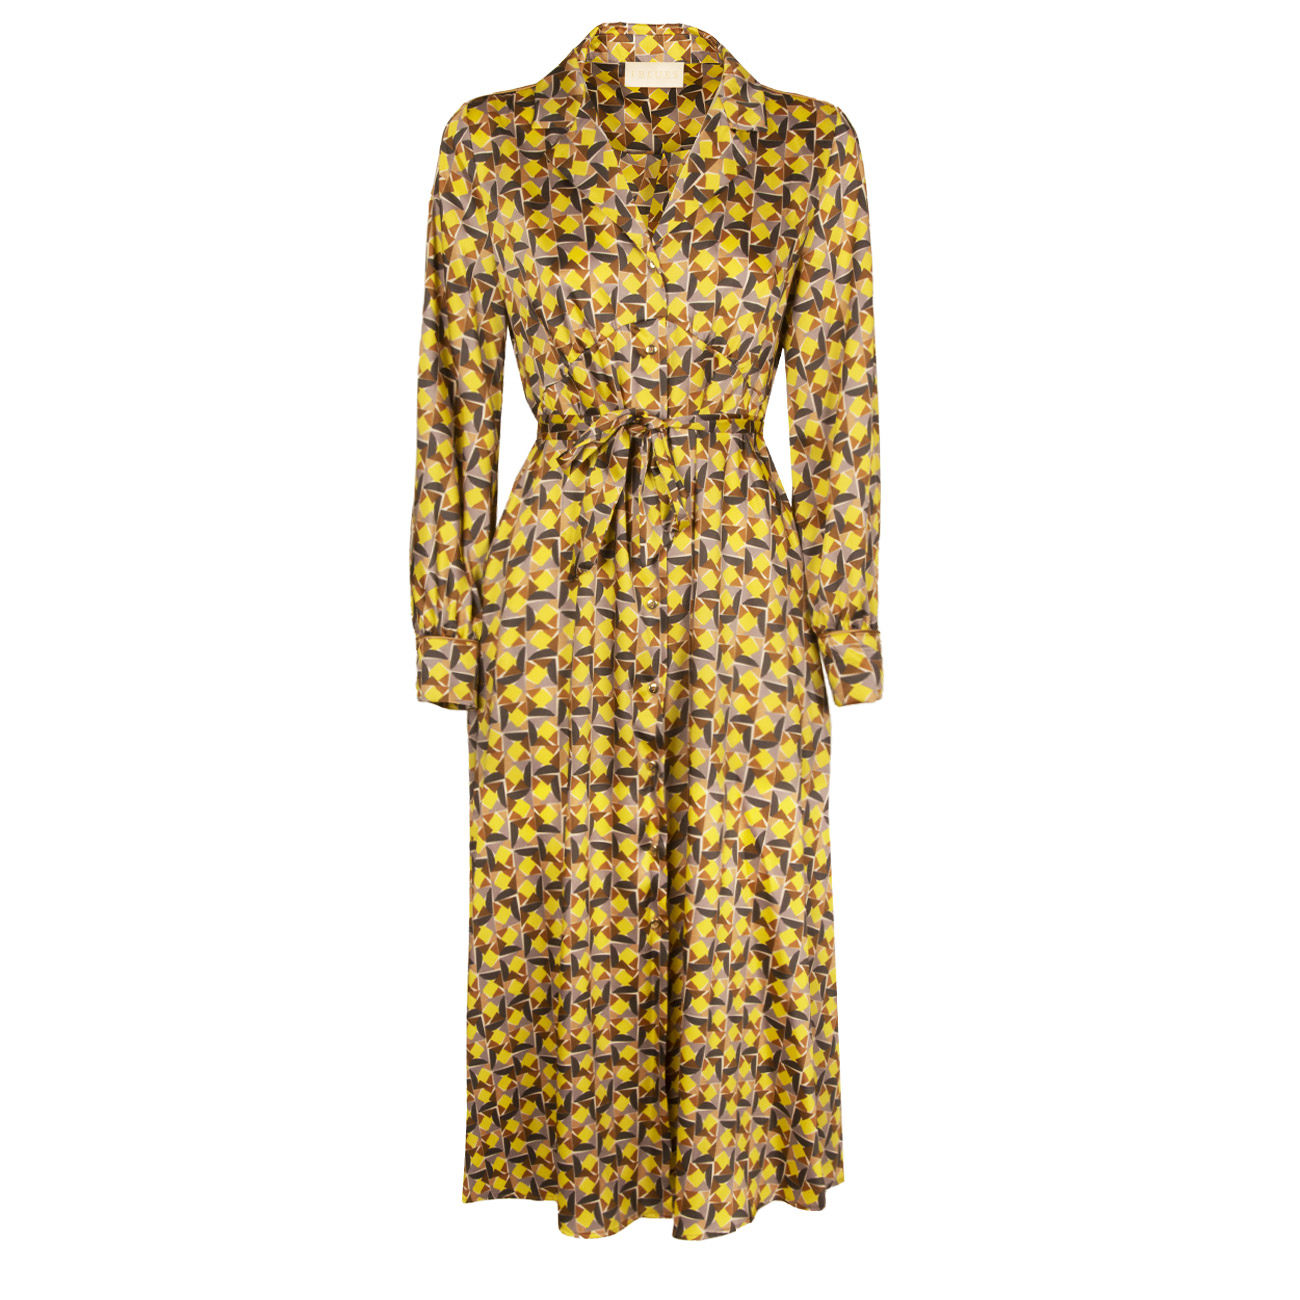 IBLUES DRESS STOMA Woman Yellow | Mascheroni Store